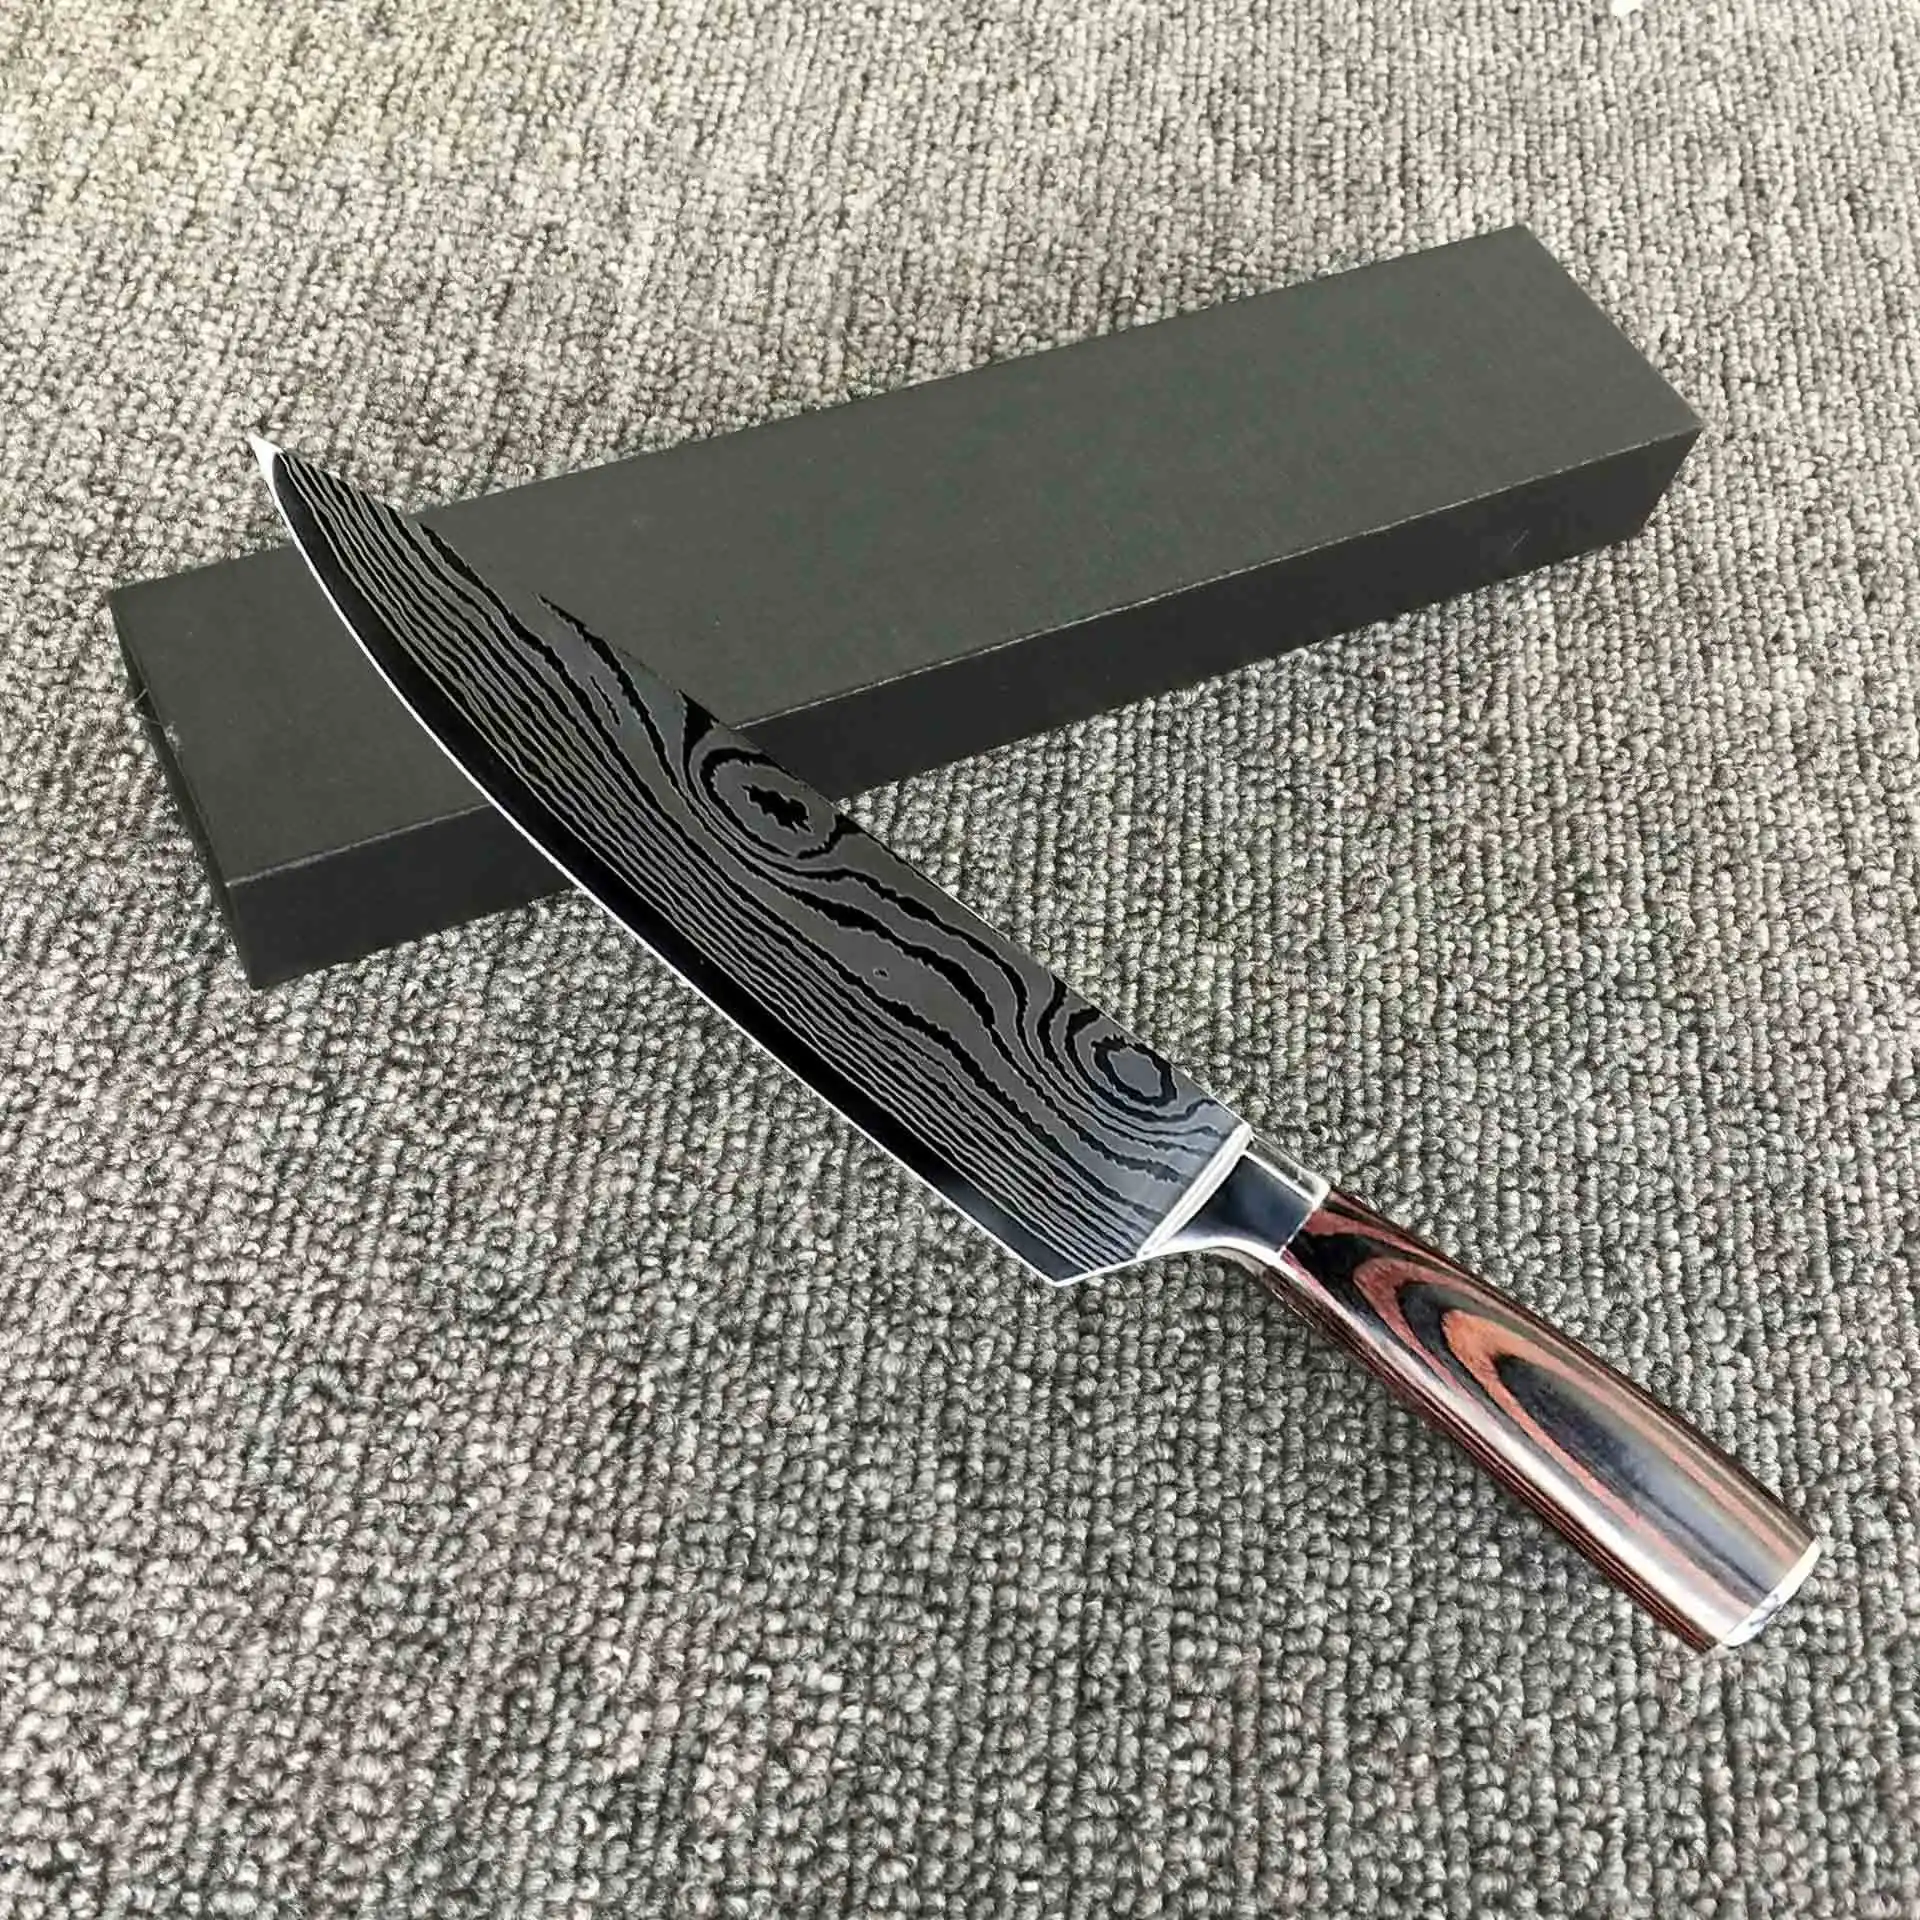 Дамасский шаблон шеф-повара нож для мяса кухонный деревянная ручка ножа шлифовальный нож универсальный нож - Цвет: A 3